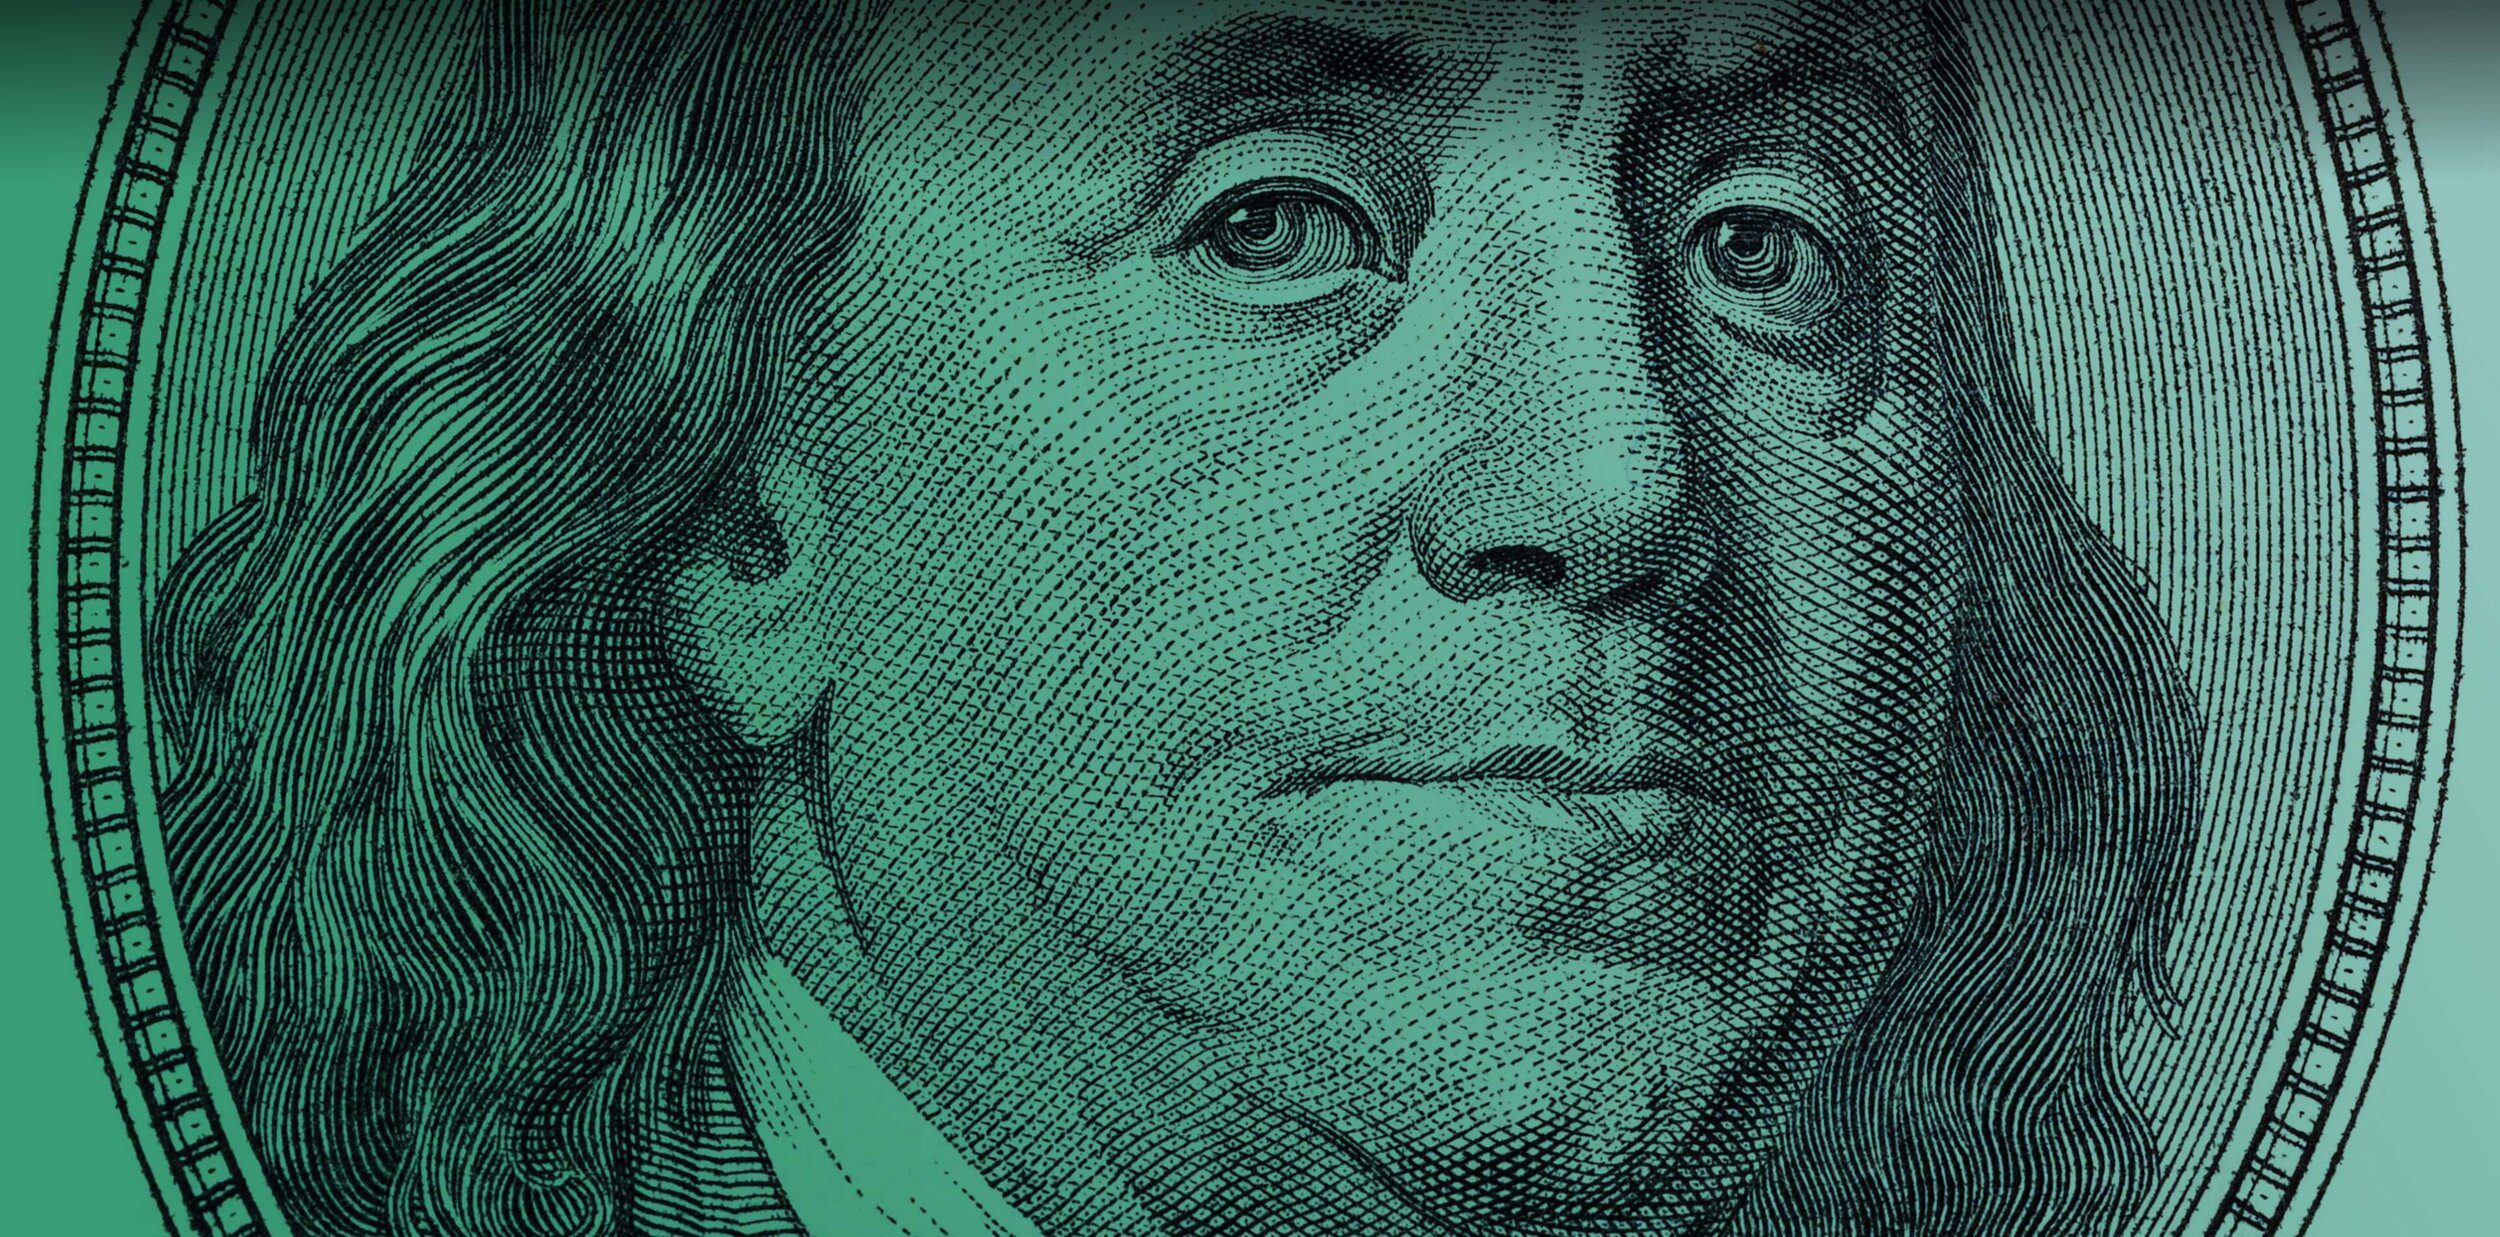 Benjamin Franklin 100 dollar bill